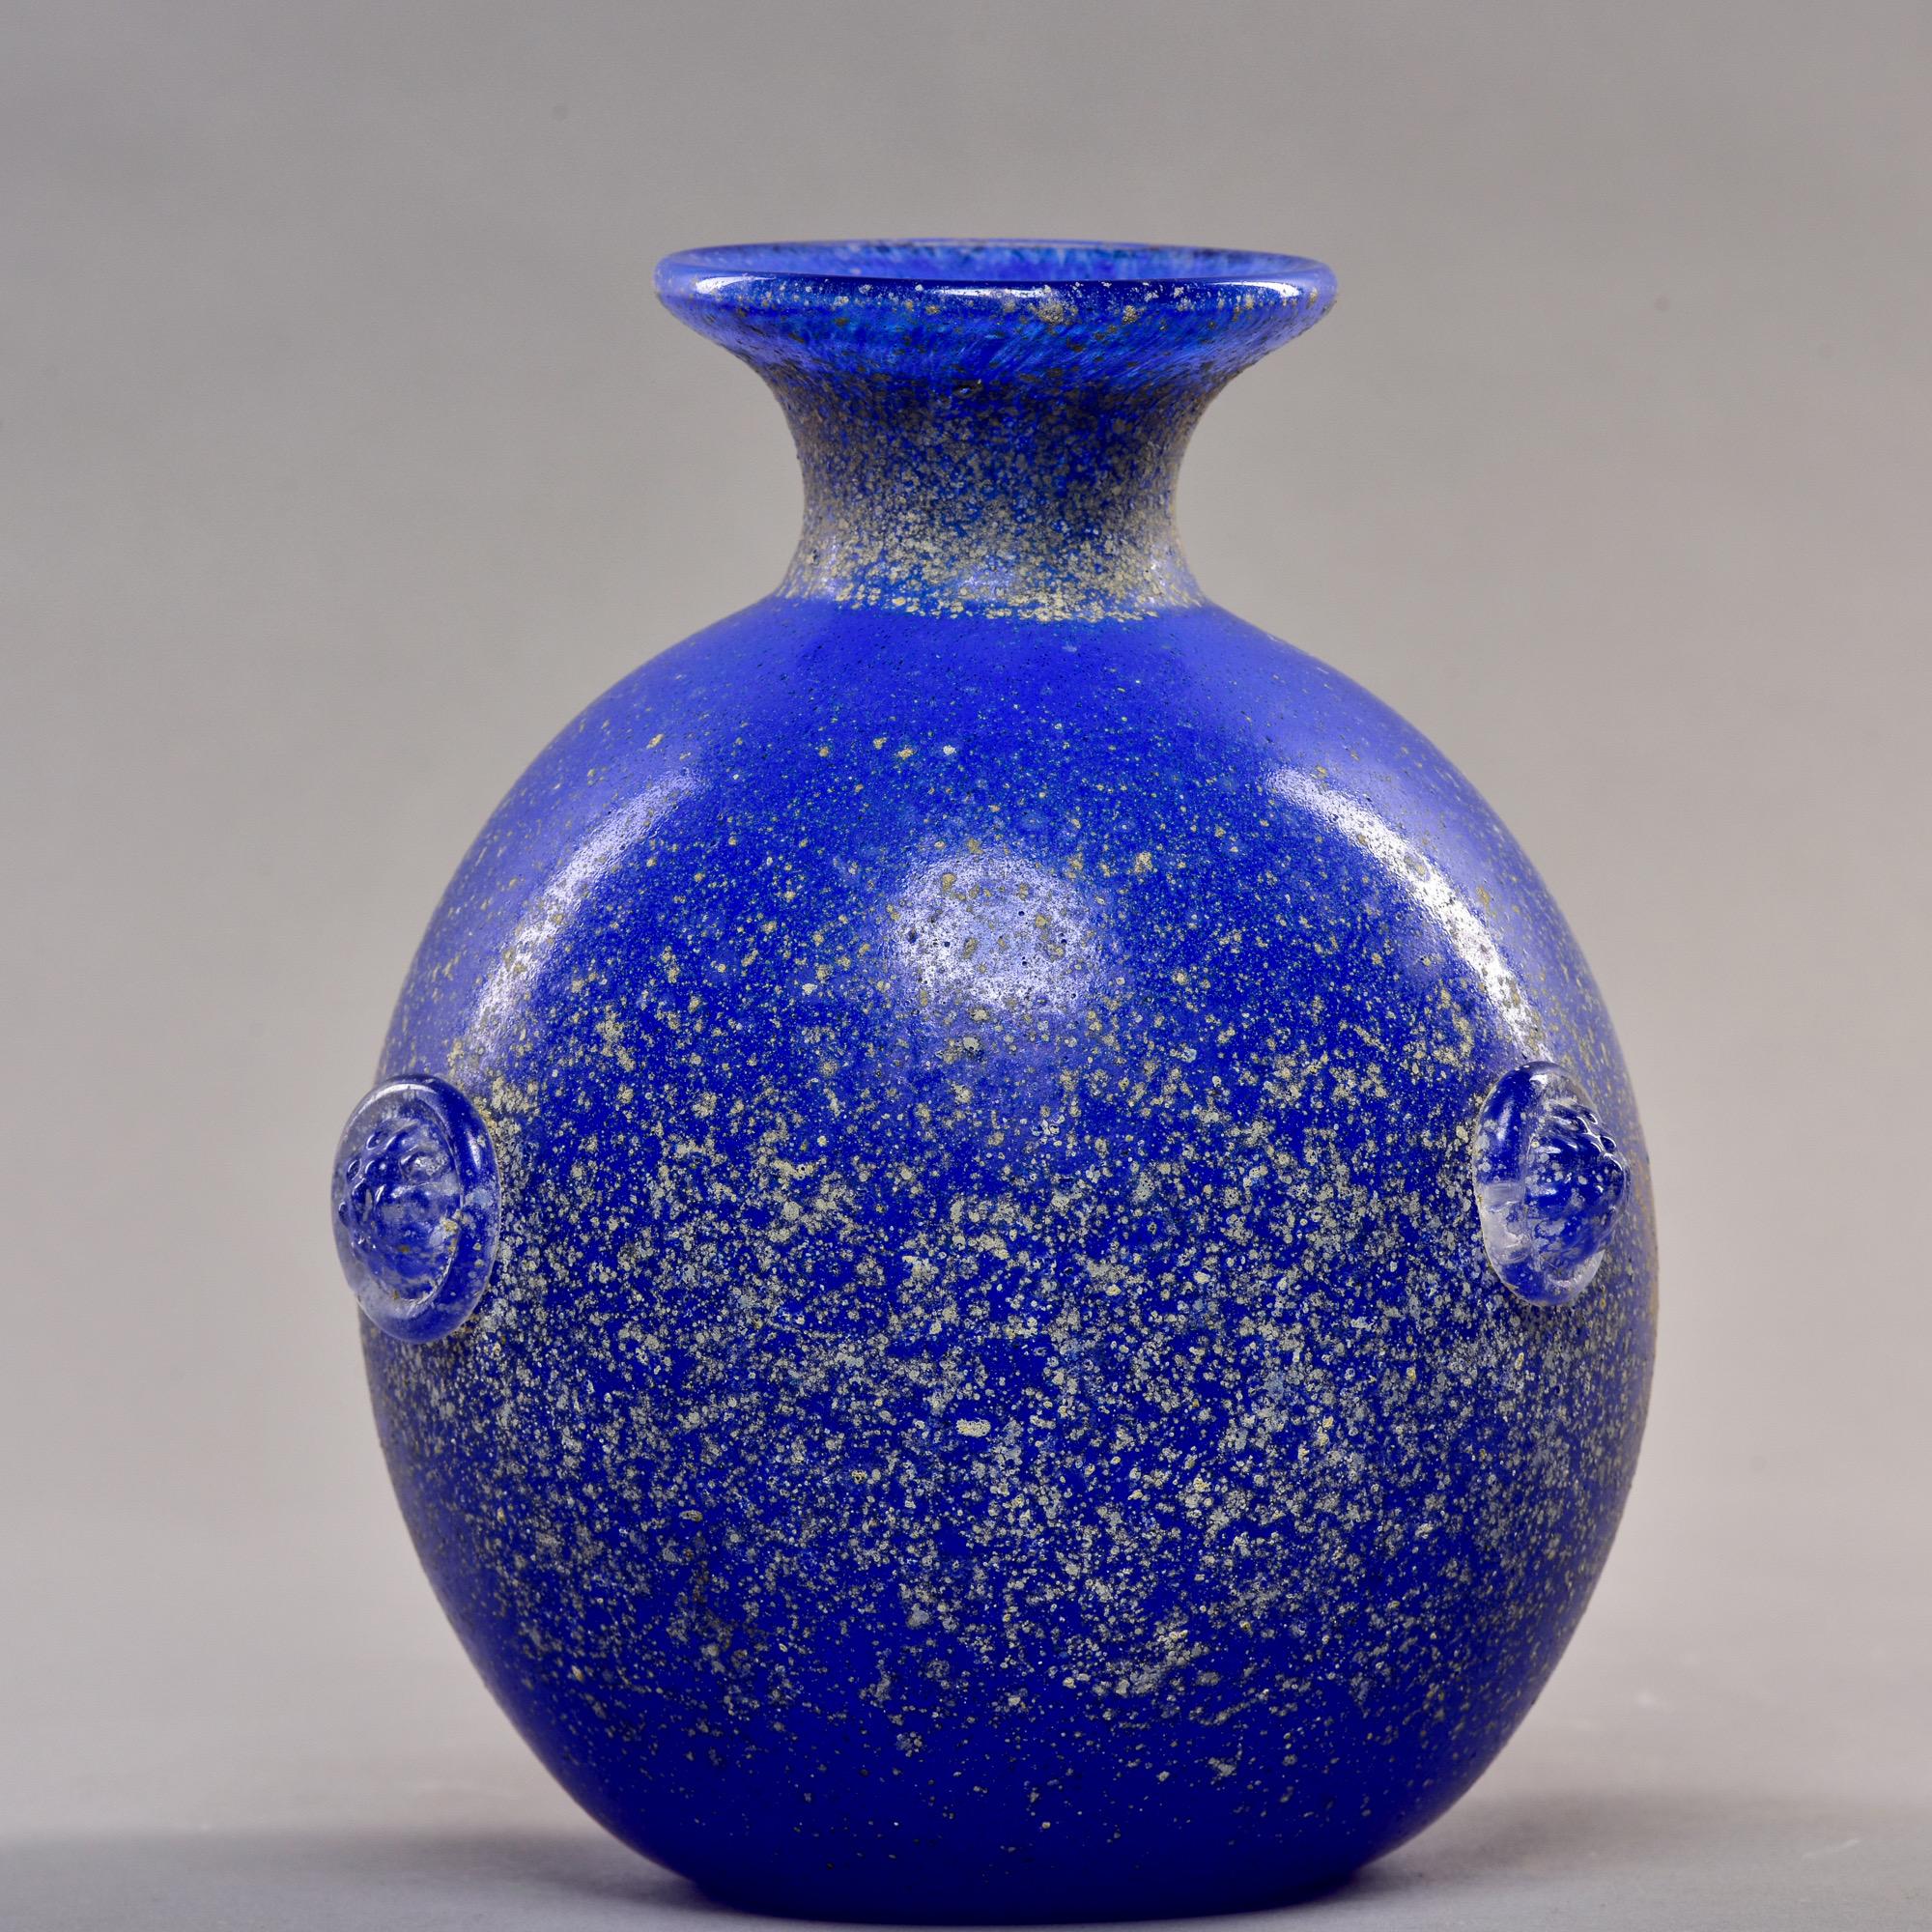 CIRCA 1980er Jahre Scavo Stil Murano Glas Kugel Vase in kobaltblau von Vecchia. Mit ausgestellter Lippe und applizierten Medaillons akzentuiert. Original-Hersteller-Dokument enthalten. Keine Mängel gefunden.